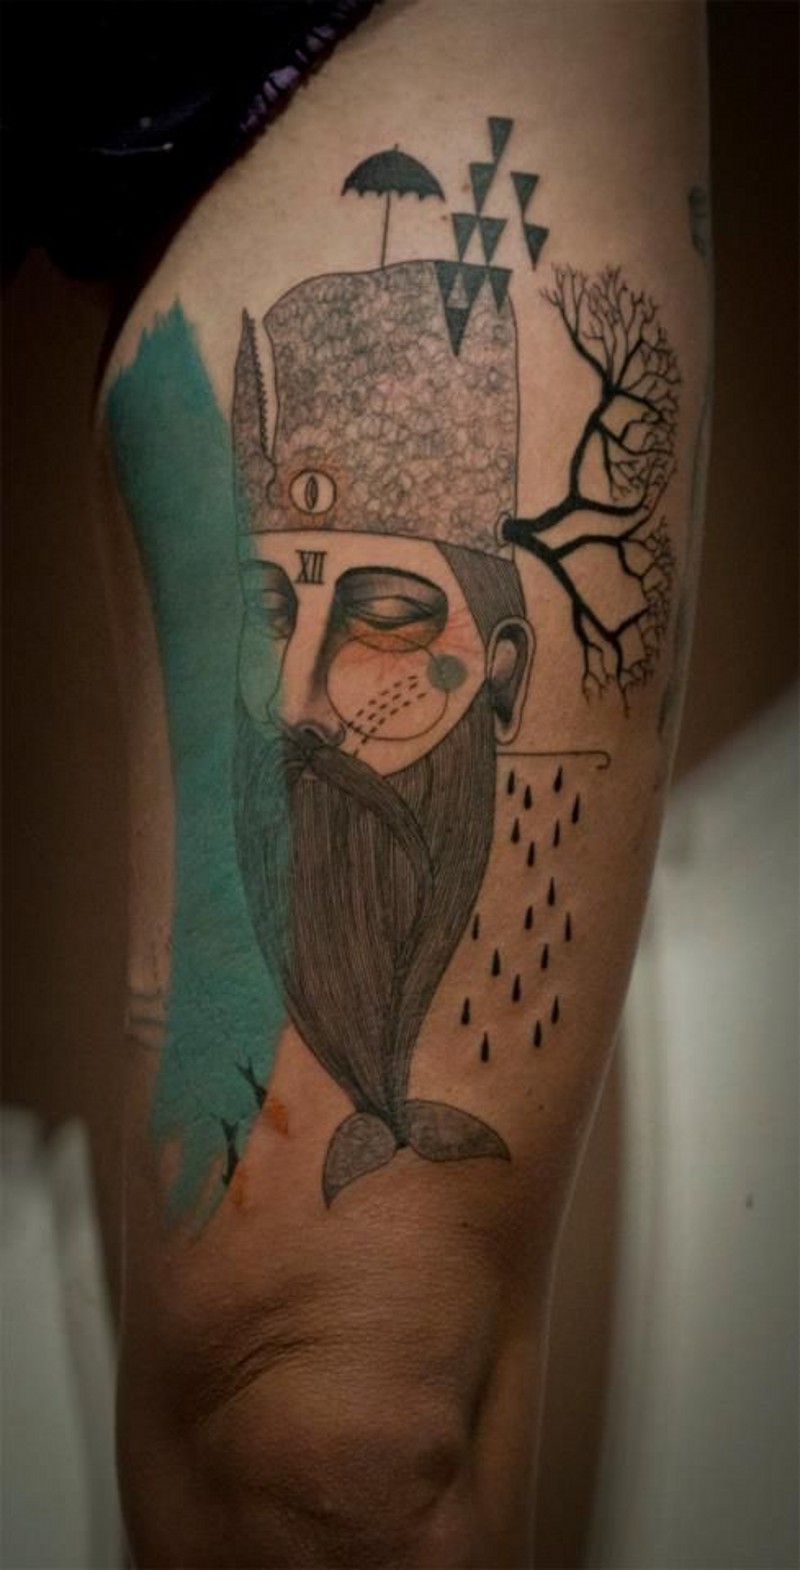 Dummes Design farbiges ungewöhnliches Porträt Tattoo am Oberschenkel